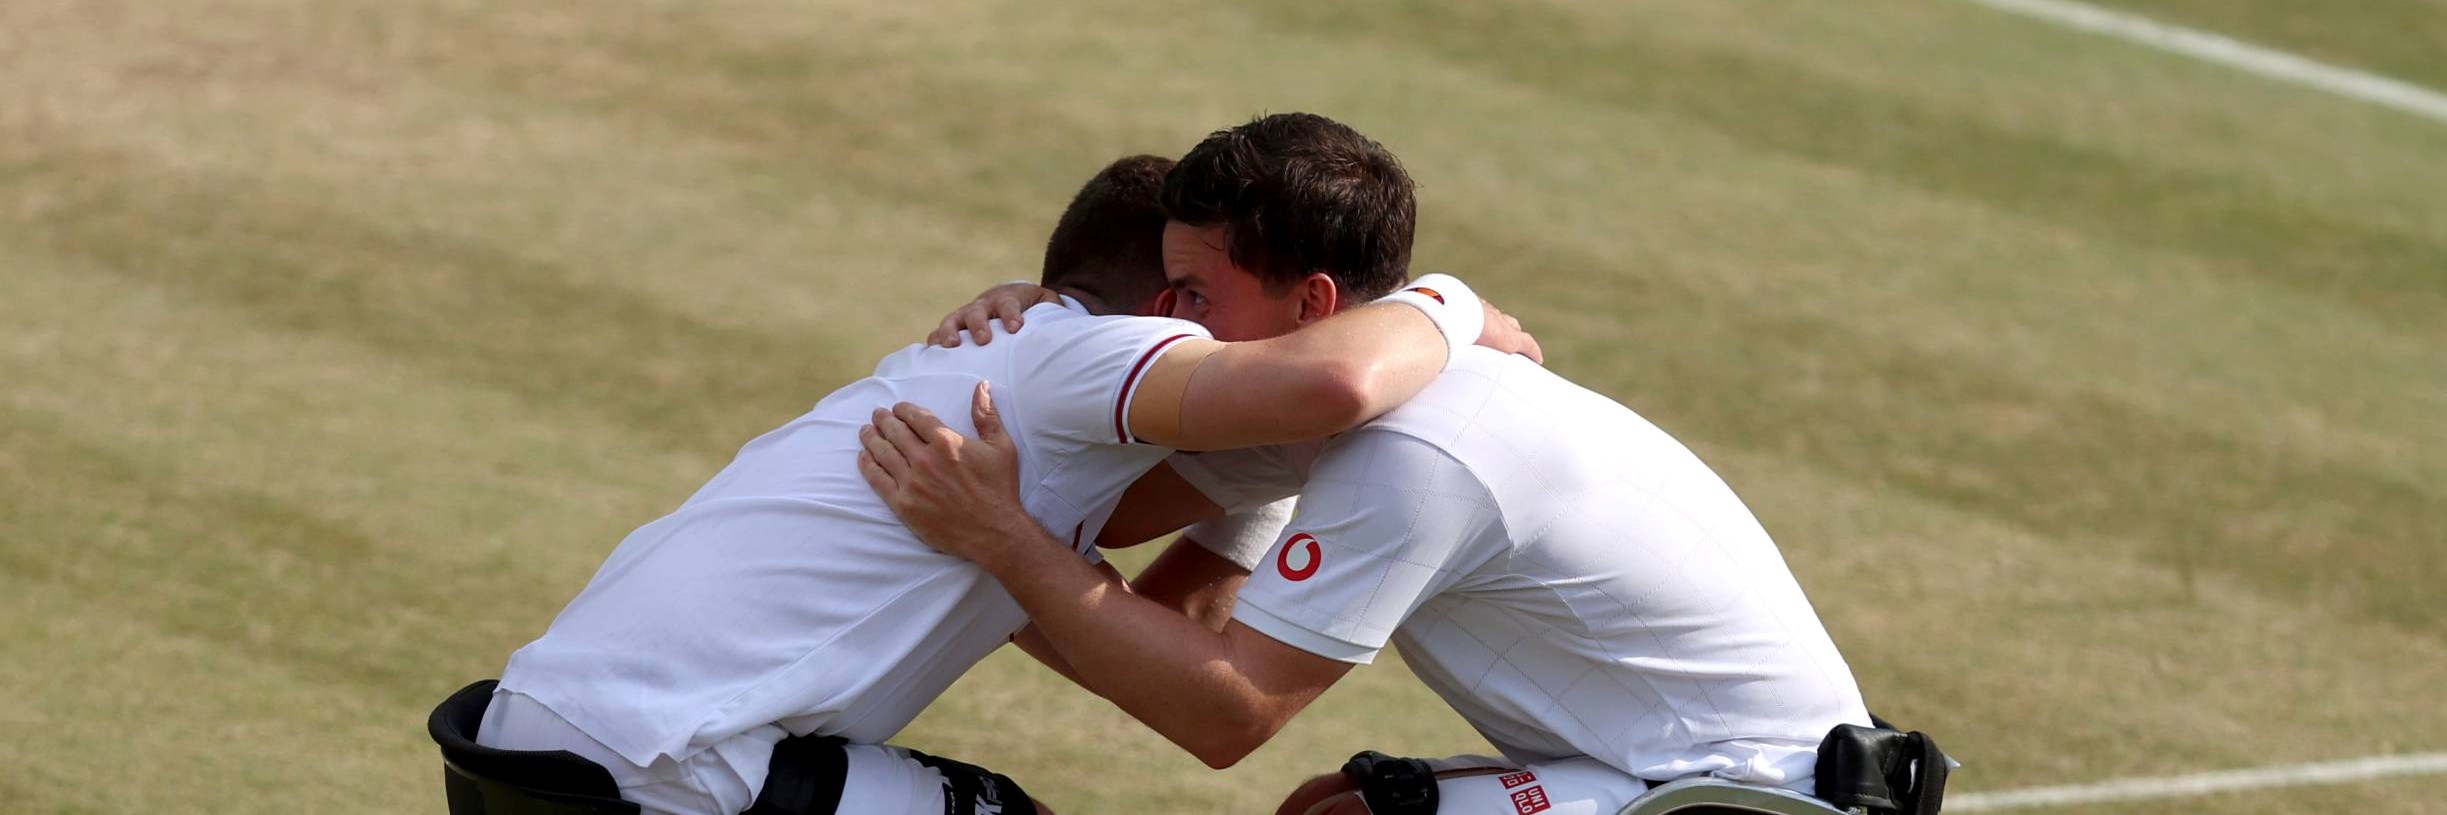 Alfie Hewett and Gordon Reid hug after winning a sixth Wimbledon title